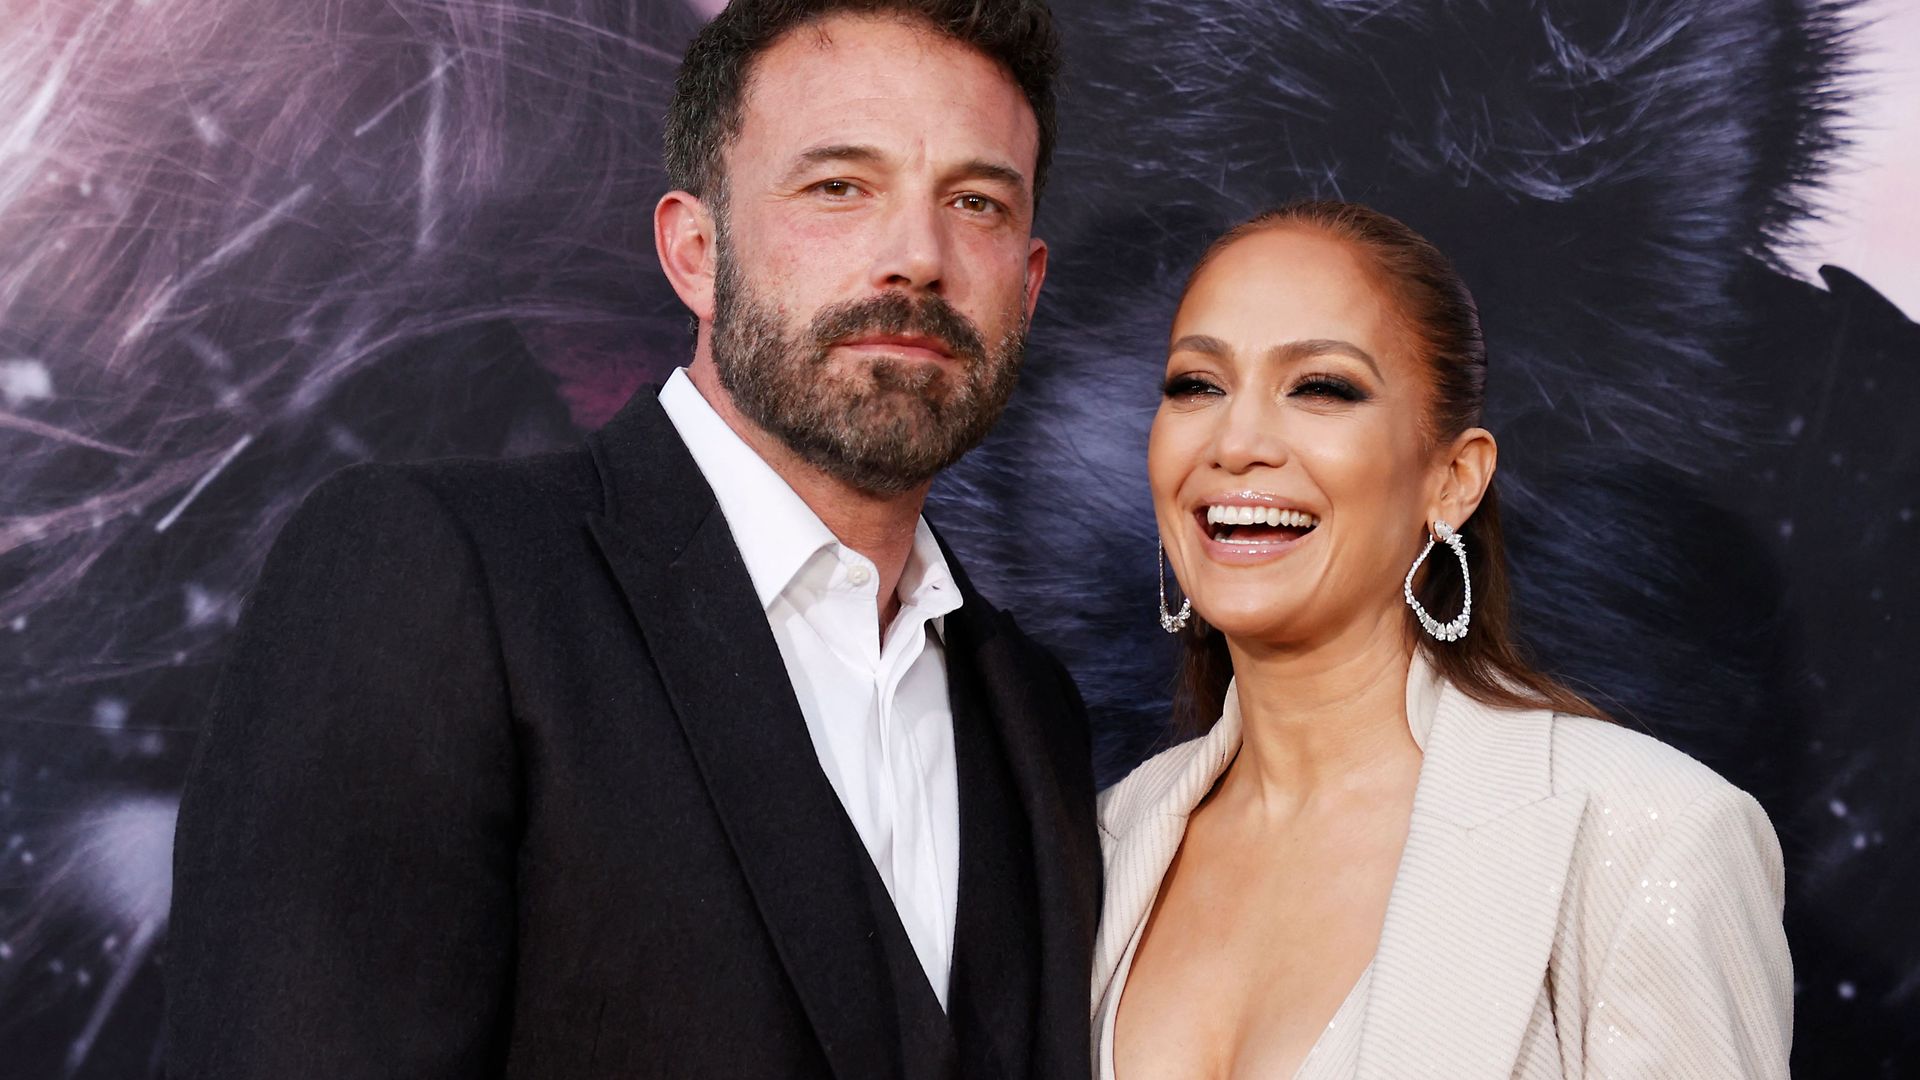 Ben Afflecj ha hablado del revuelo mediático que genera su esposa Jennifer Lopez.